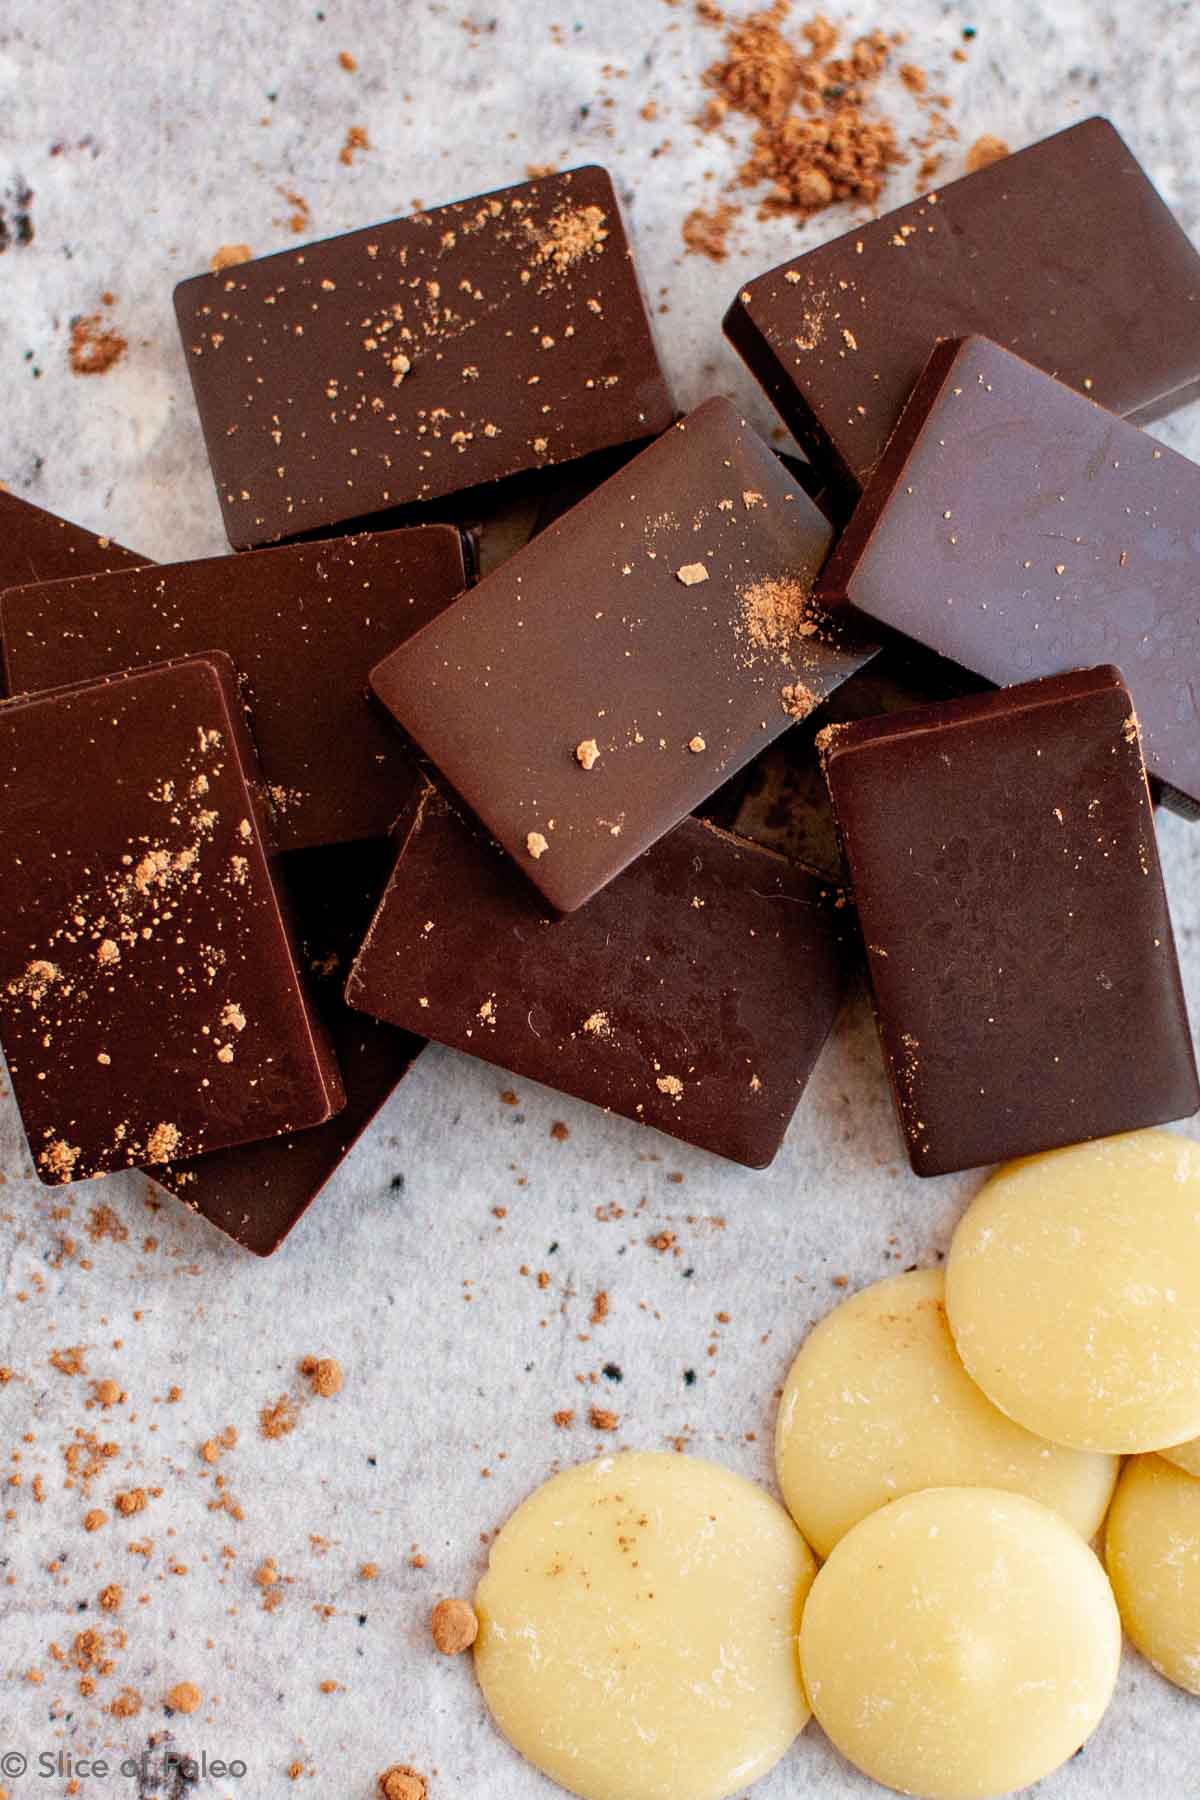 Homemade paleo chocolate pieces